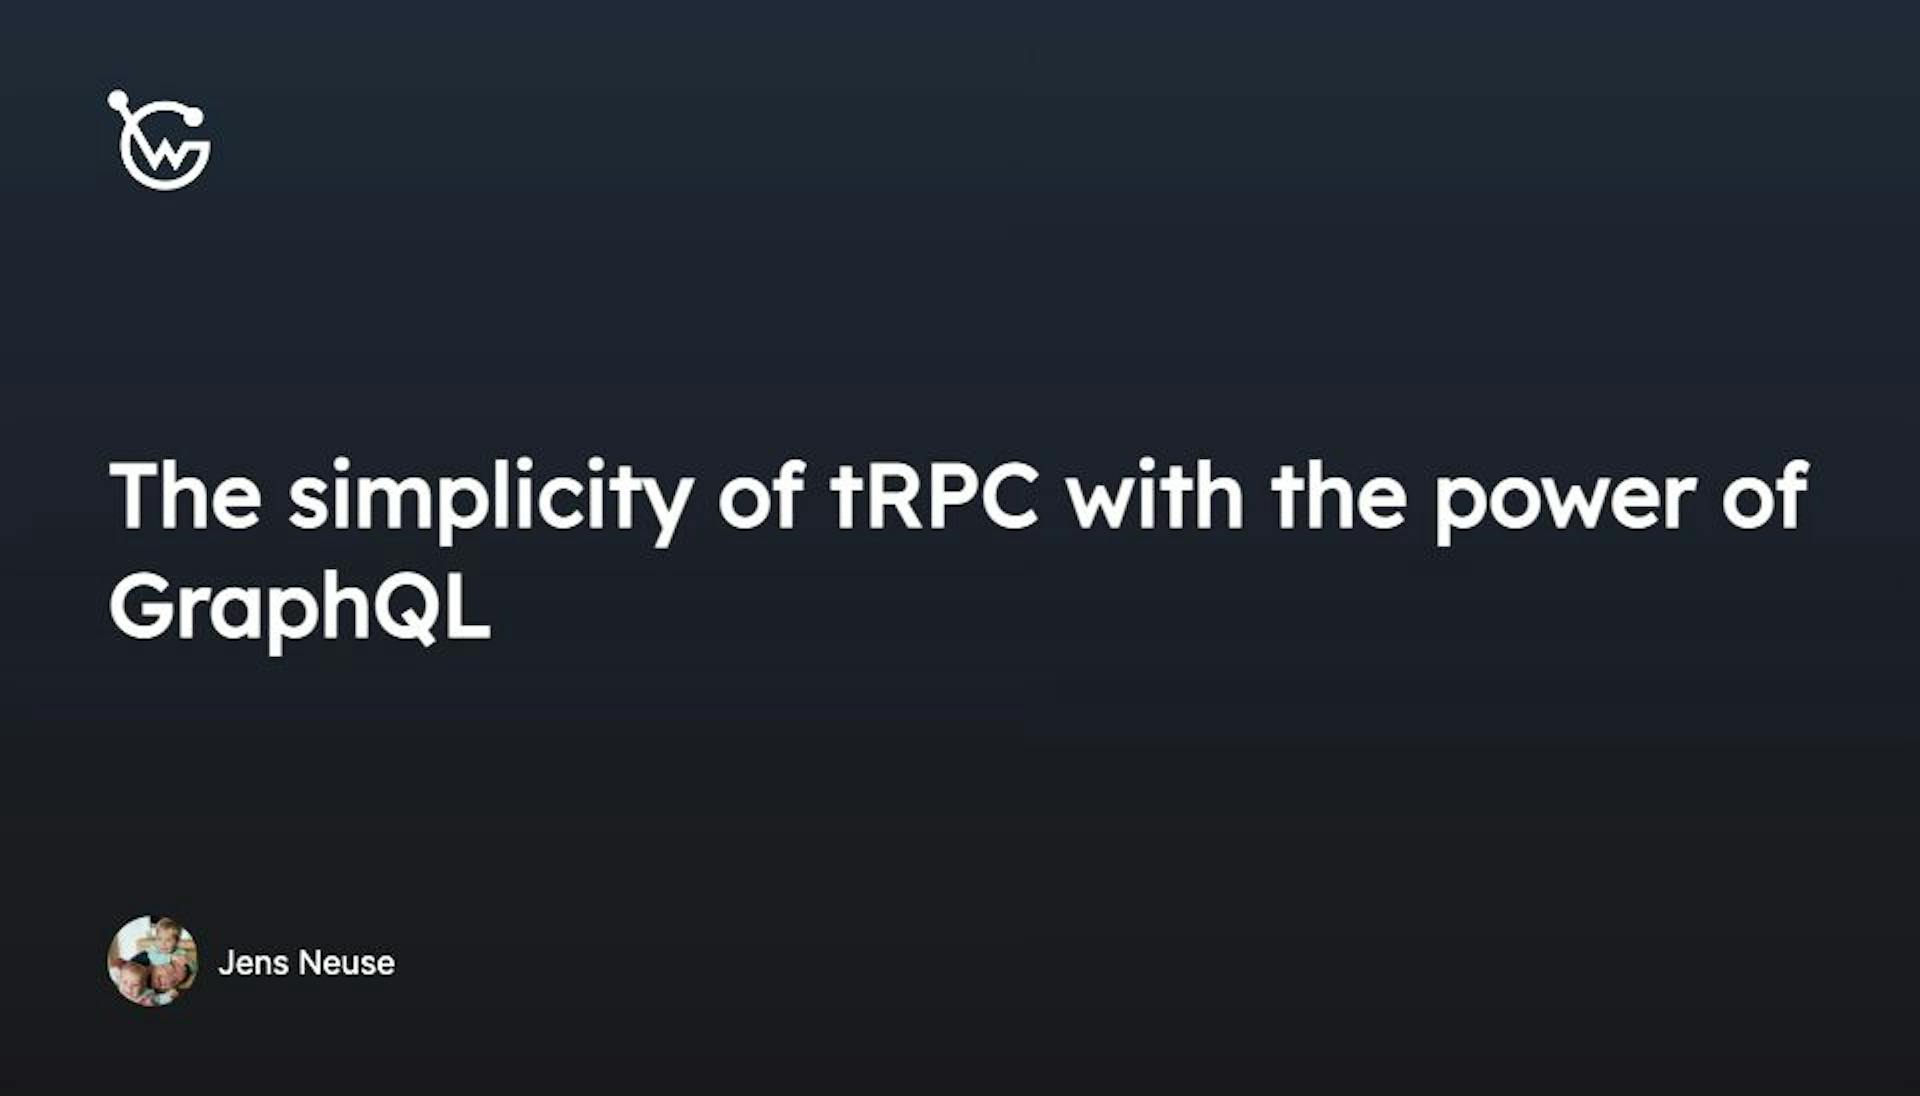 featured image - Tính đơn giản của tRPC với sức mạnh của GraphQL